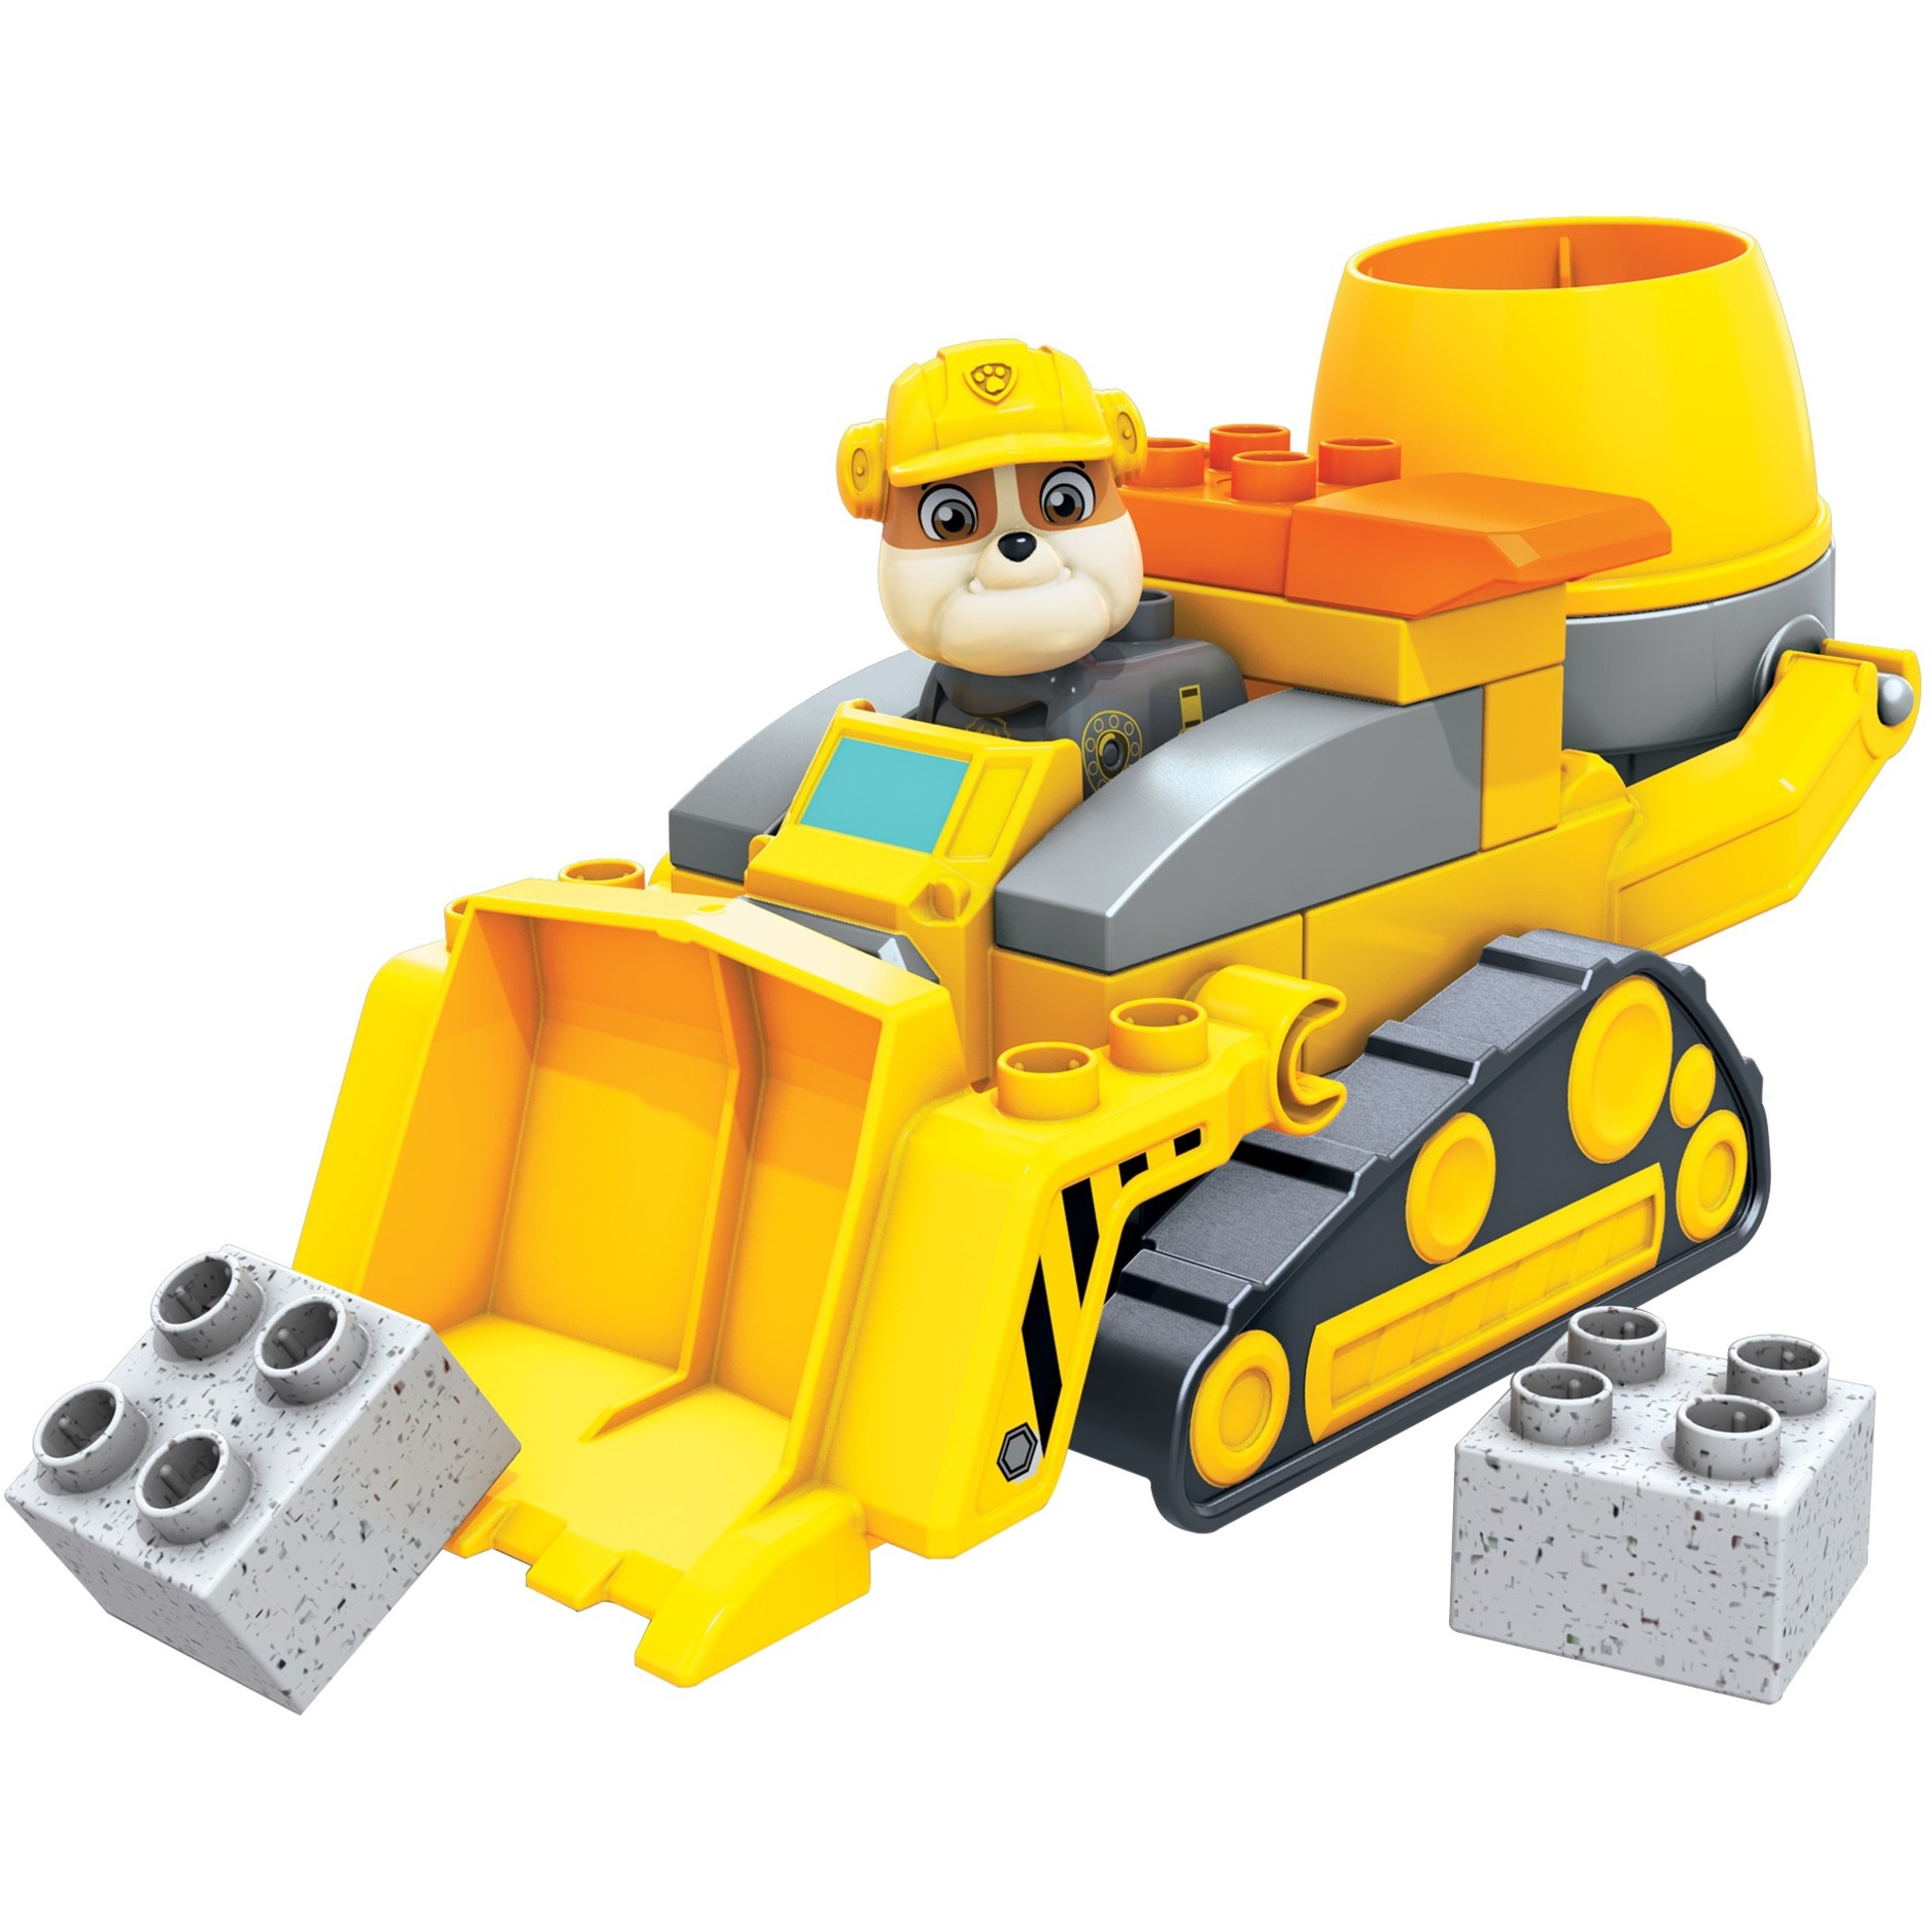 Image of Alternate - Mega Bloks Paw Patrol Rubbles Baustellenlaster, Konstruktionsspielzeug online einkaufen bei Alternate